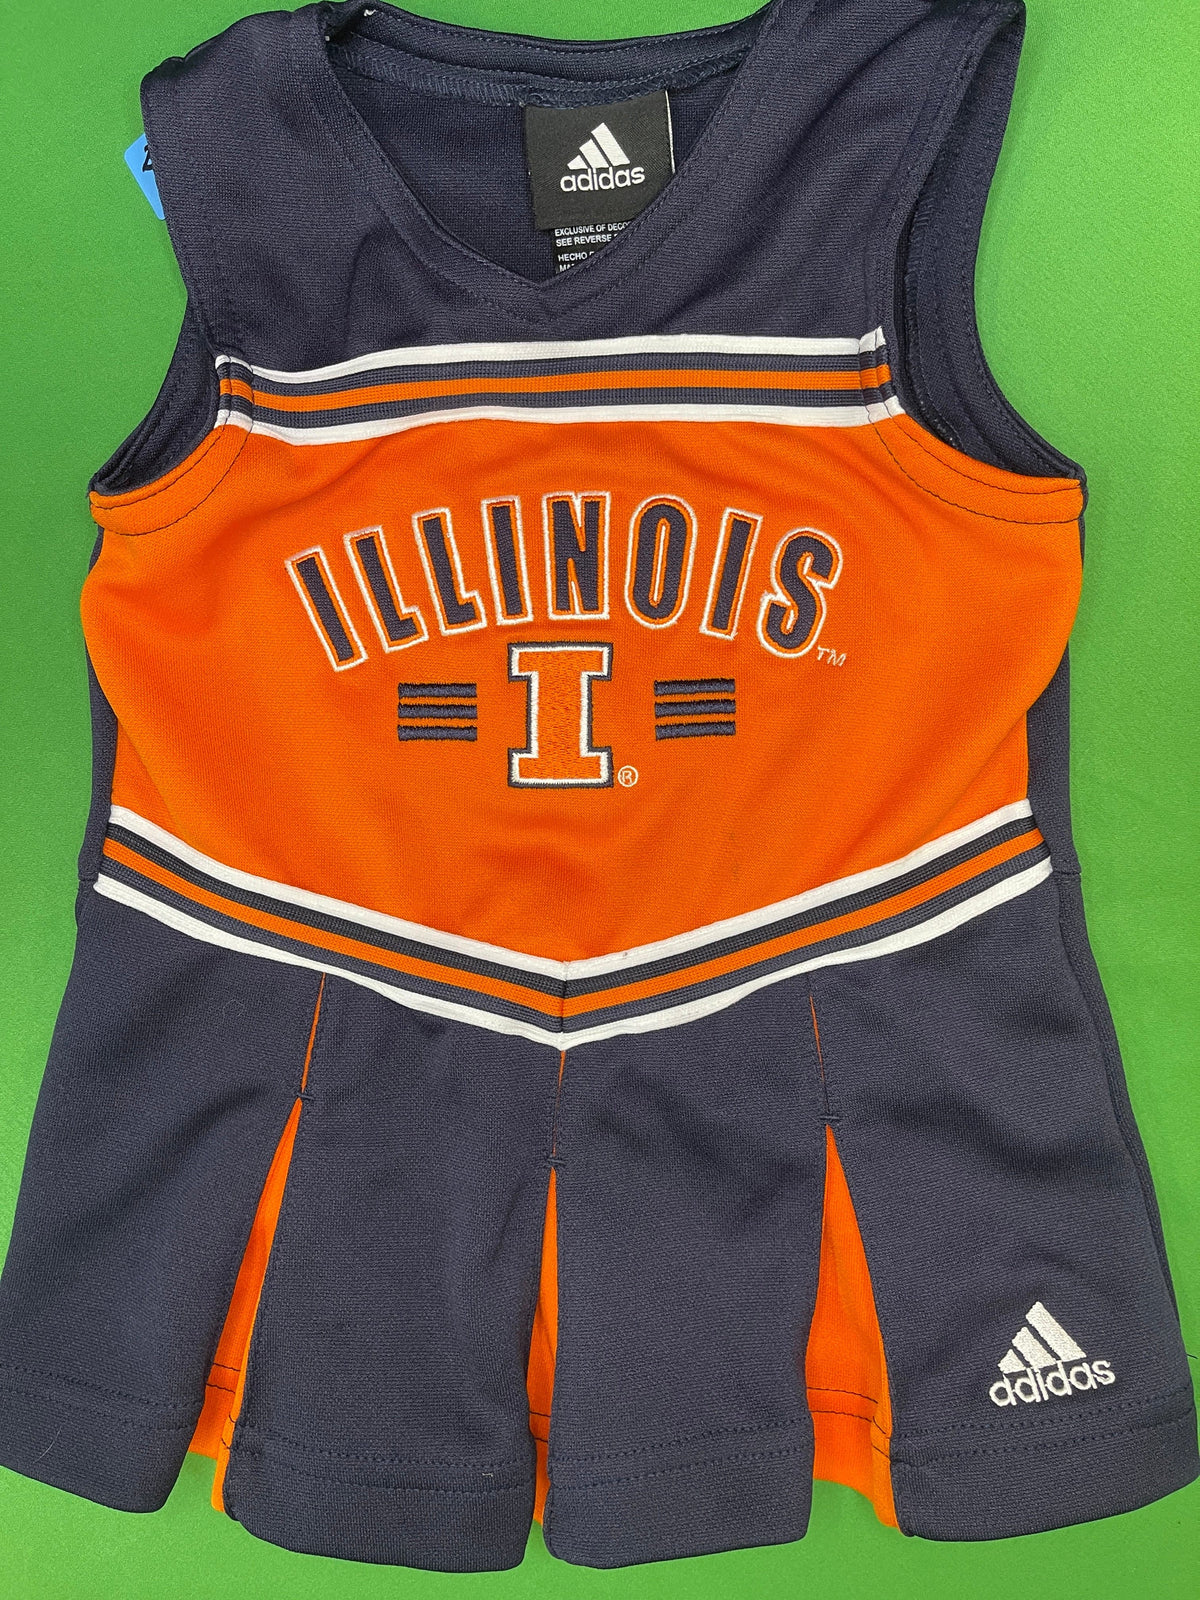 NCAA Illinois Fighting Illini Adidas Cheerleader Dress Toddler 2T